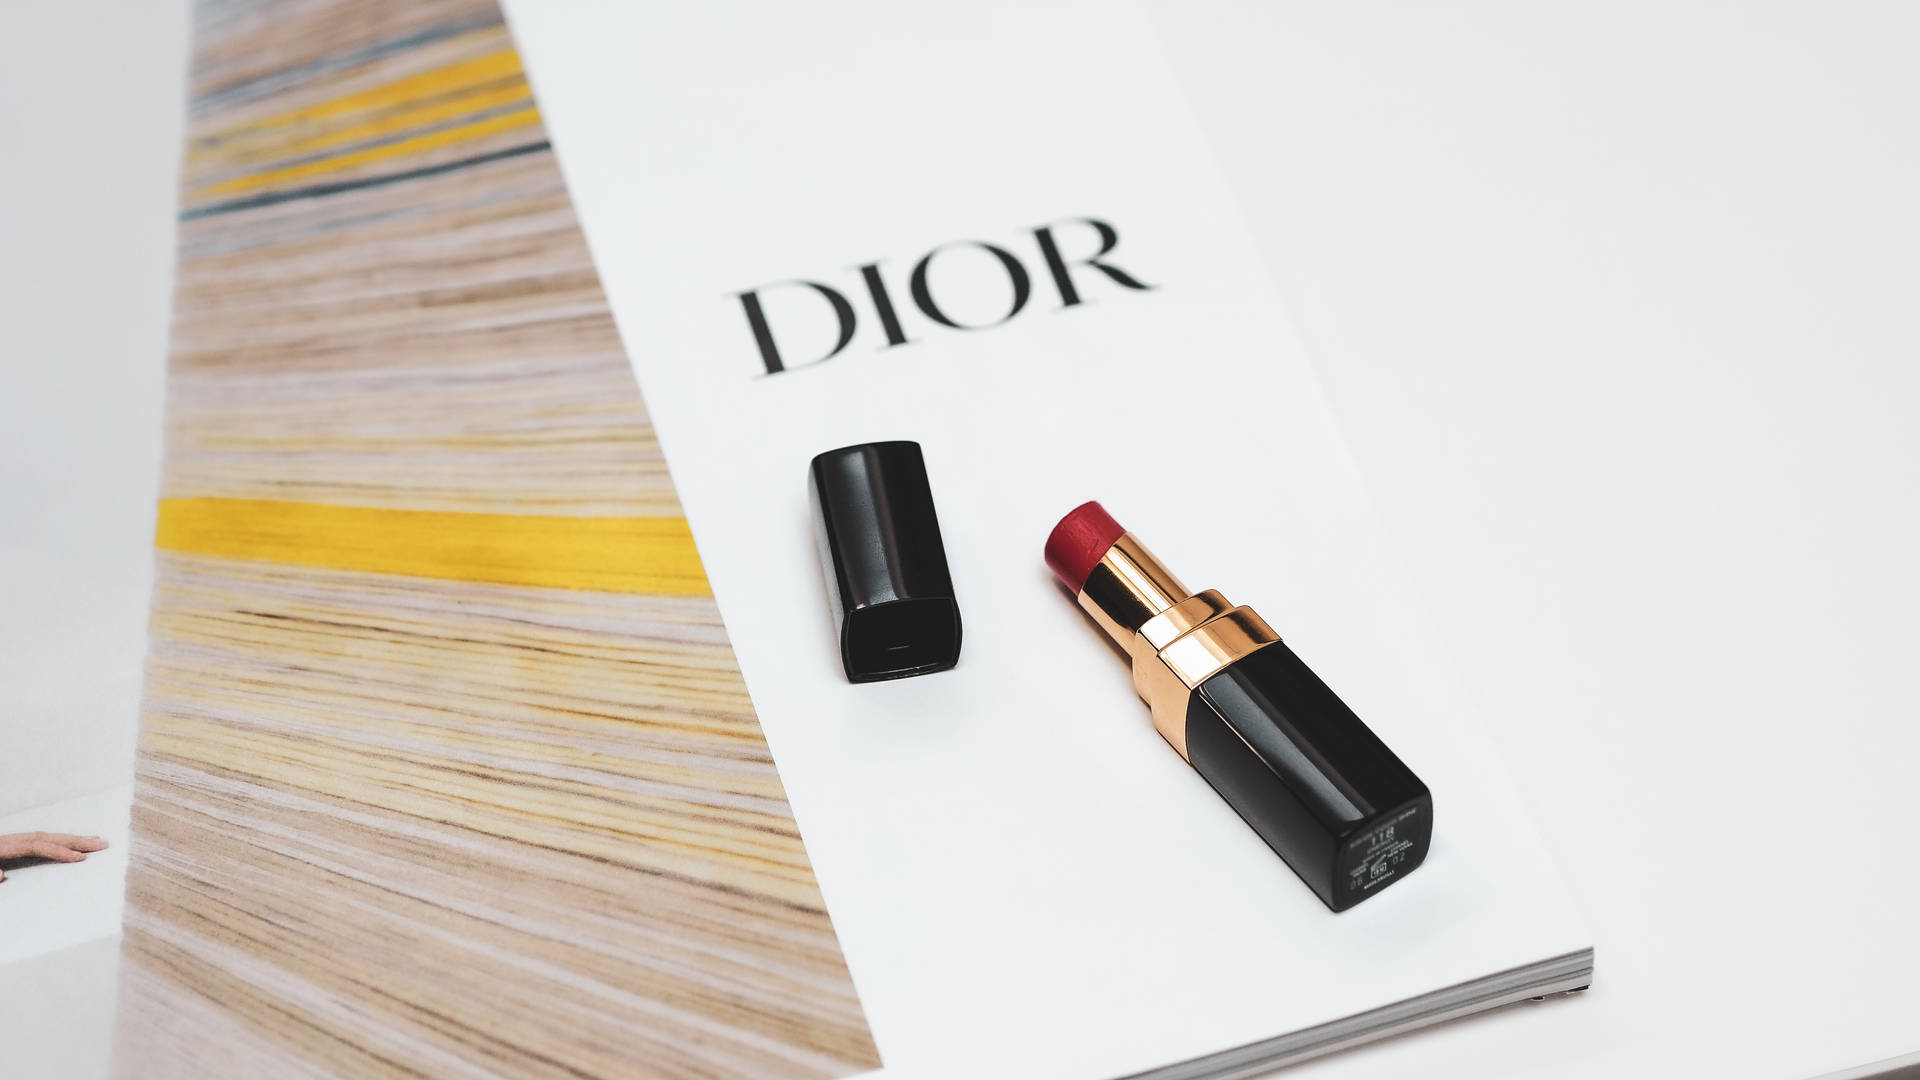 Dior Magazine And Lipstick Wallpaper